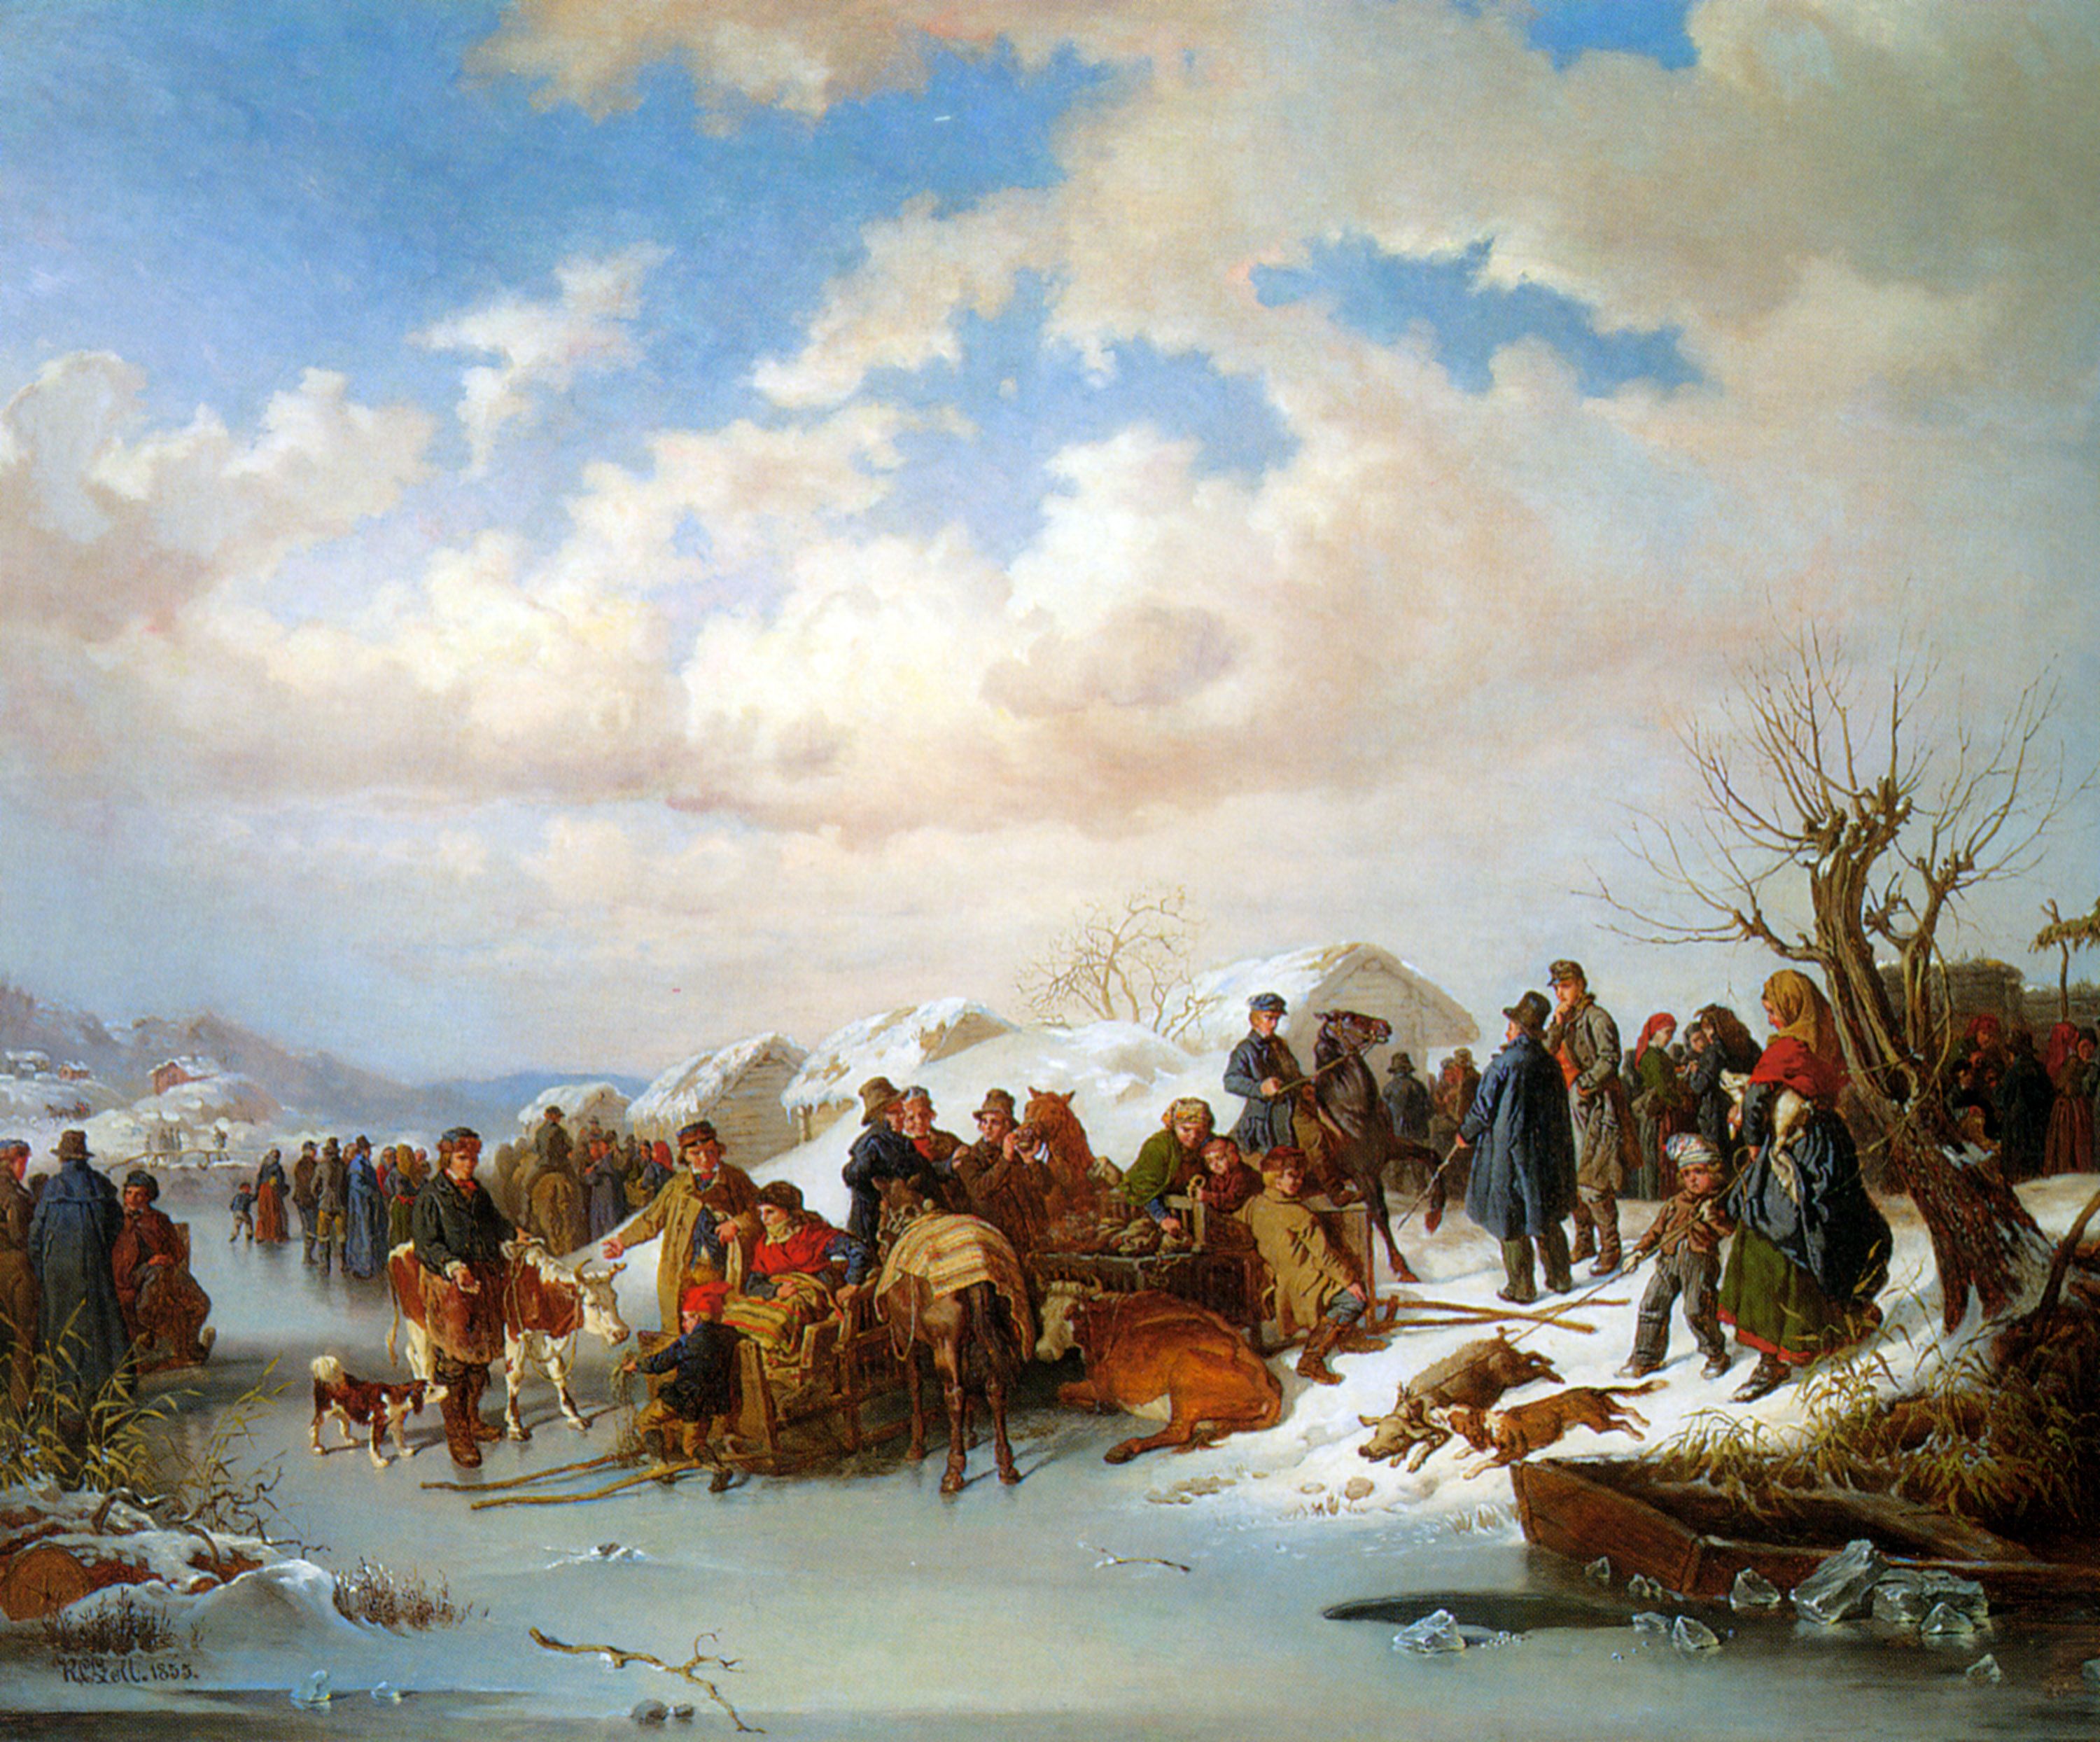 A Village Gathering along a Frozen River by Kilian Christoffer Zoll